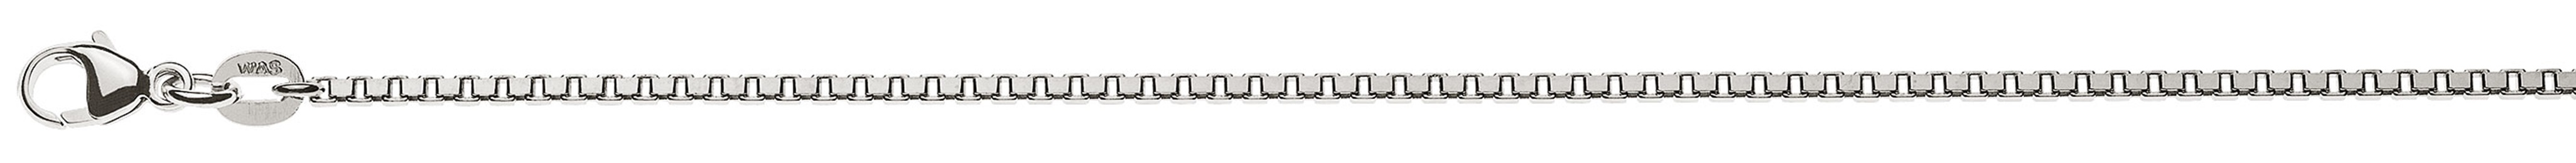 AURONOS Prestige Halskette Weissgold 18K Venezianerkette diamantiert 50cm 1.6mm